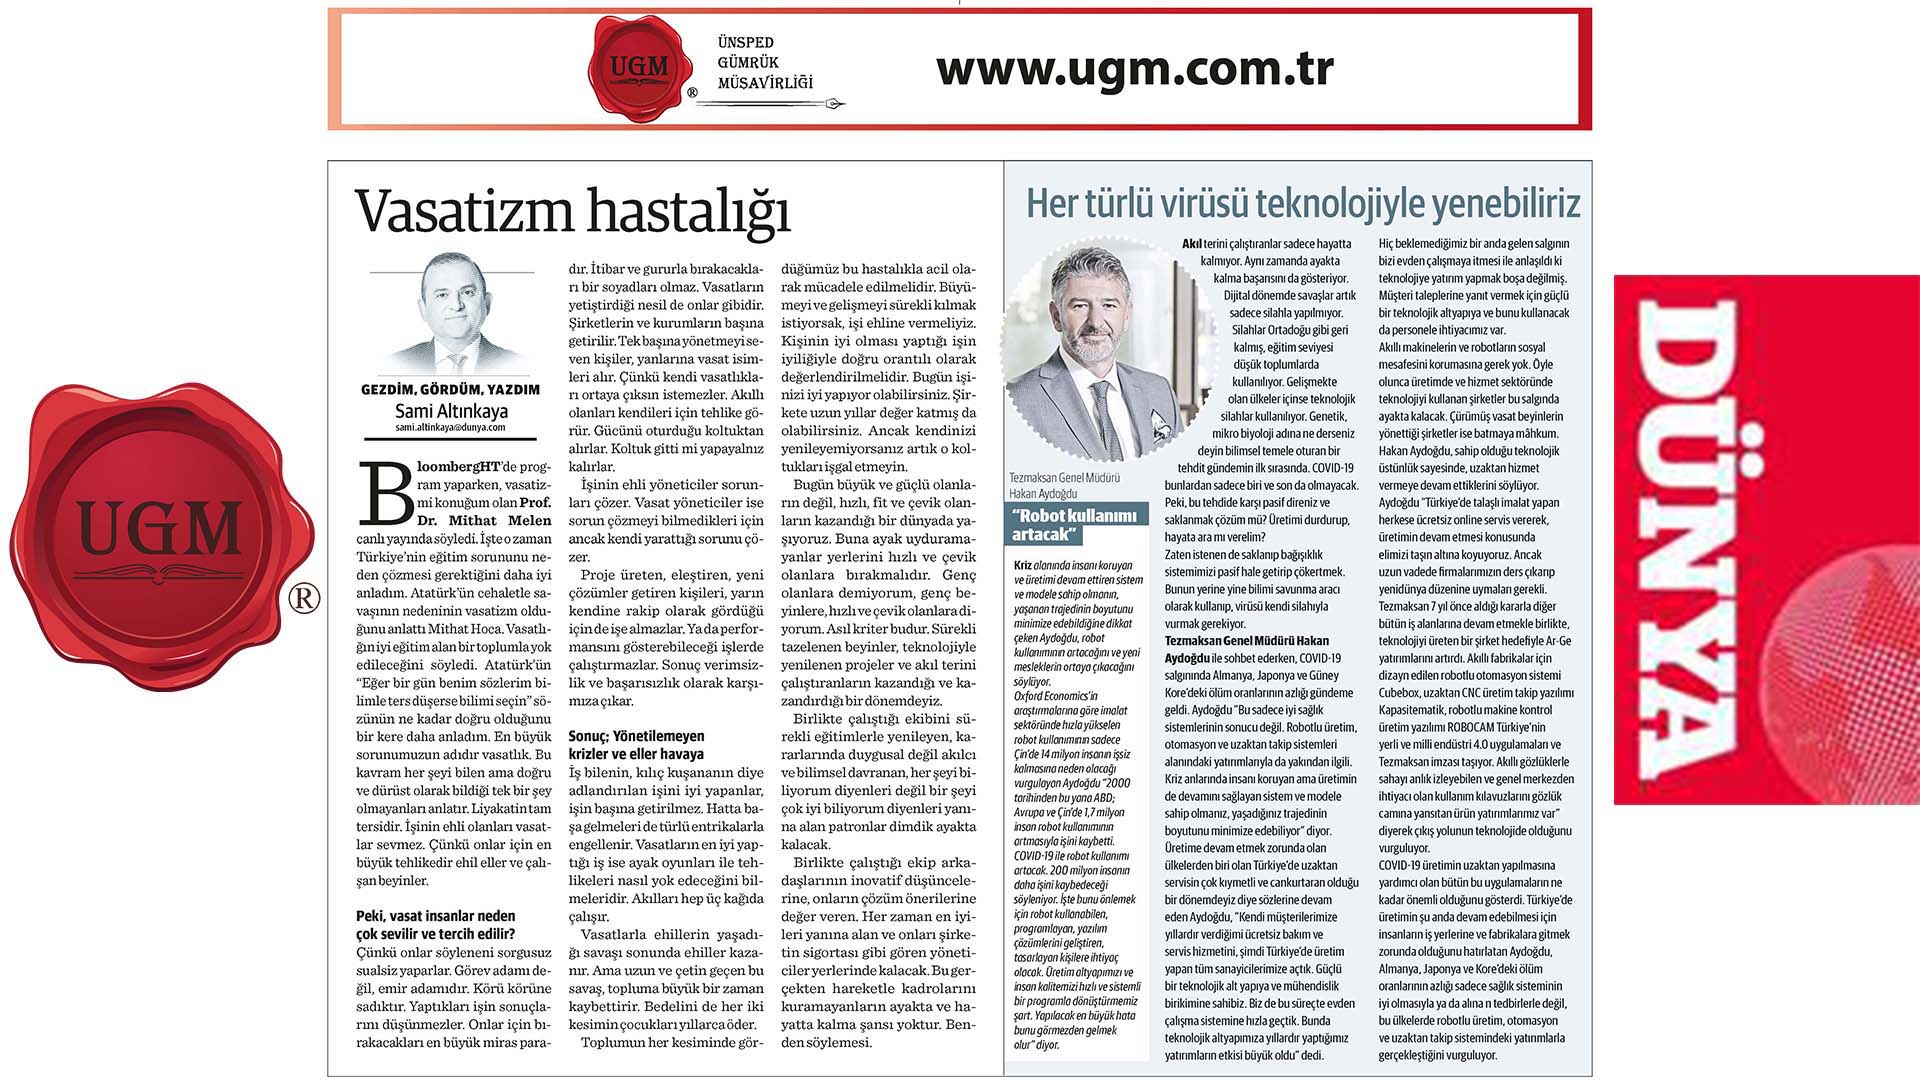 UGM Kurumsal İletişim Direktörümüz Sami Altınkaya'nın "Vasatizm hastalığı" başlıklı yazısı, 22.06.2020 tarihinde Dünya Gazetesi'nde yayınlandı.